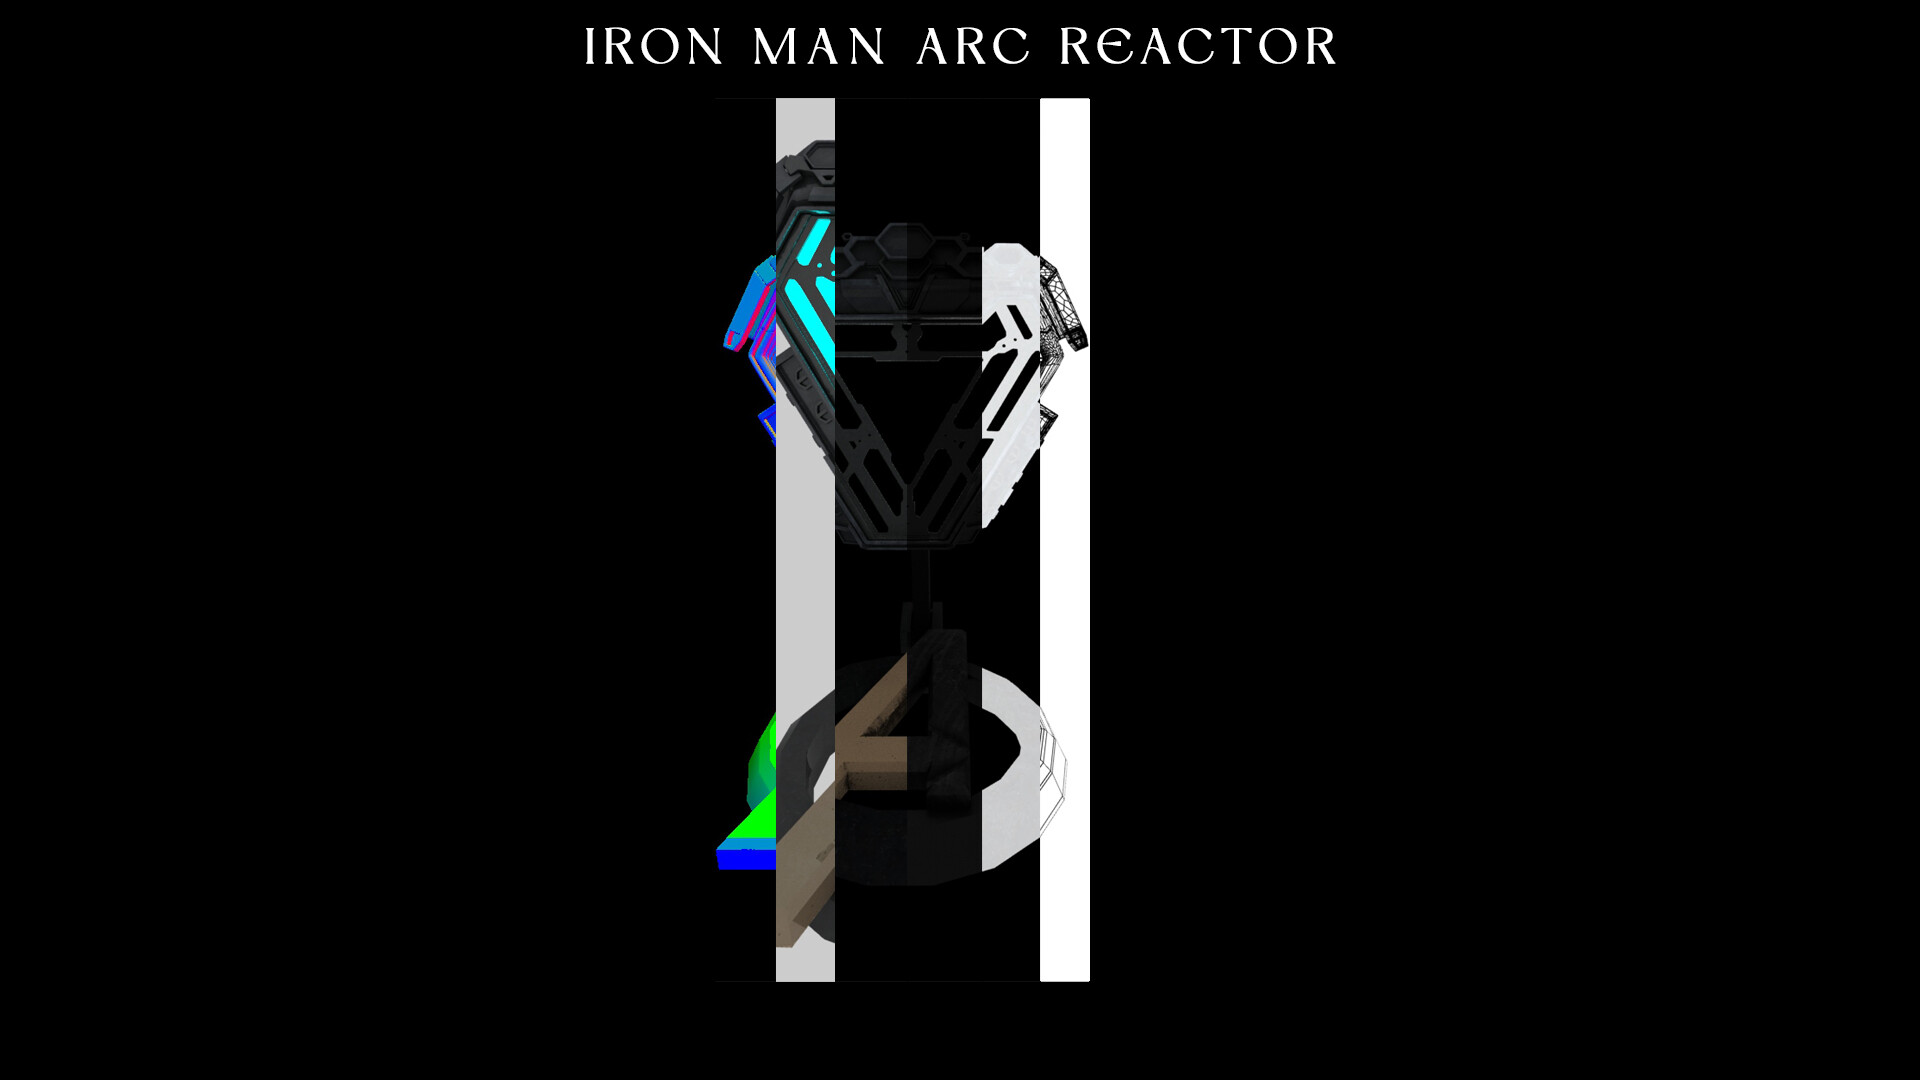 Iron Man Arc Reactor wallpaper by JonasFabry by JonasFabry on DeviantArt